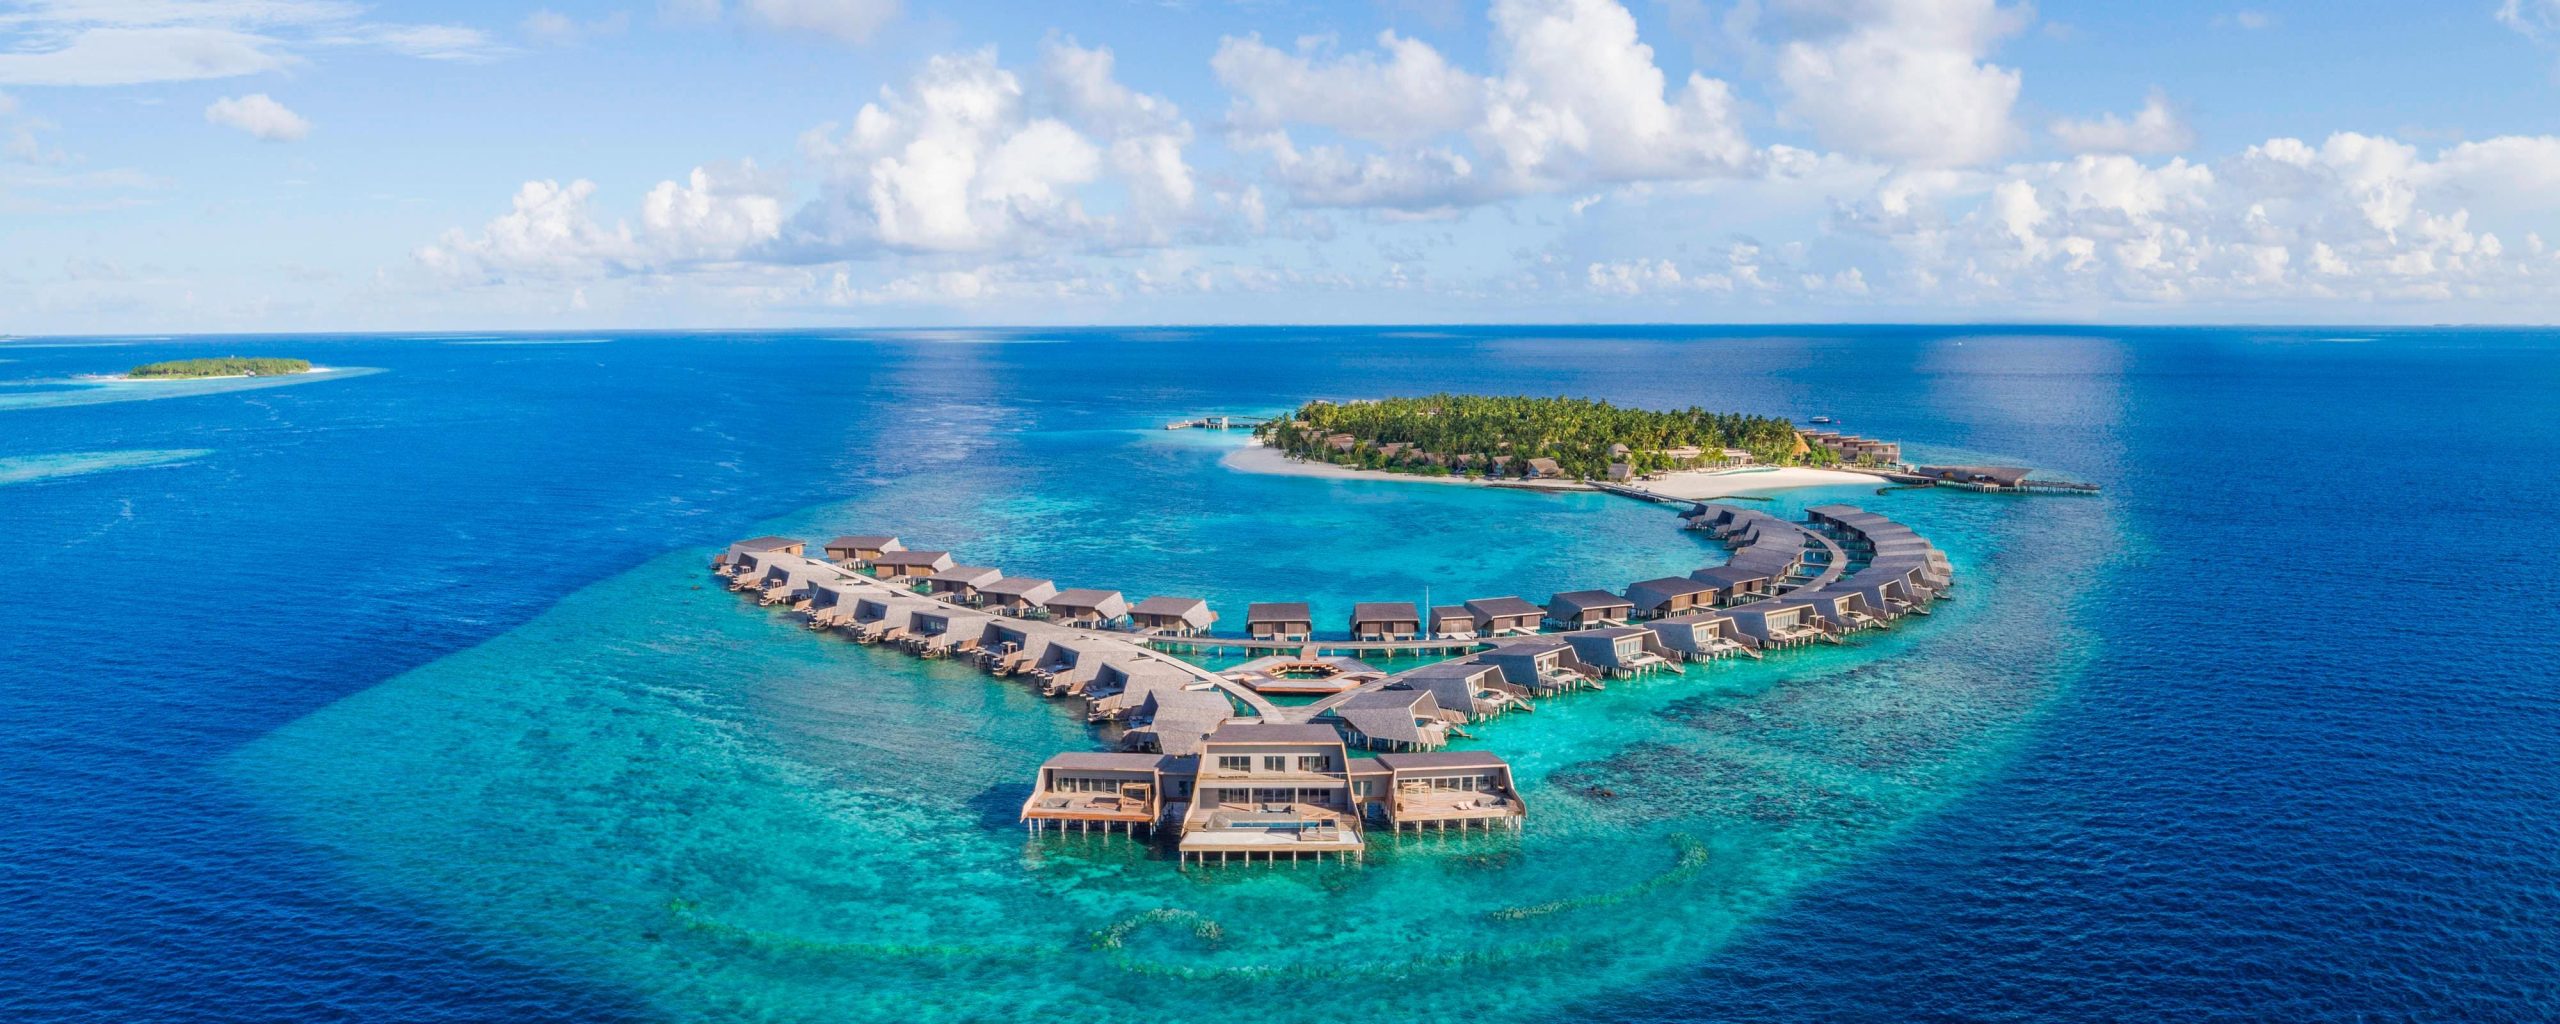 موسم الأعياد يعود إلى منتجع سانت ريجيس فومولي جزر المالديف مع فعاليات مذهلة وبرنامج متميّز